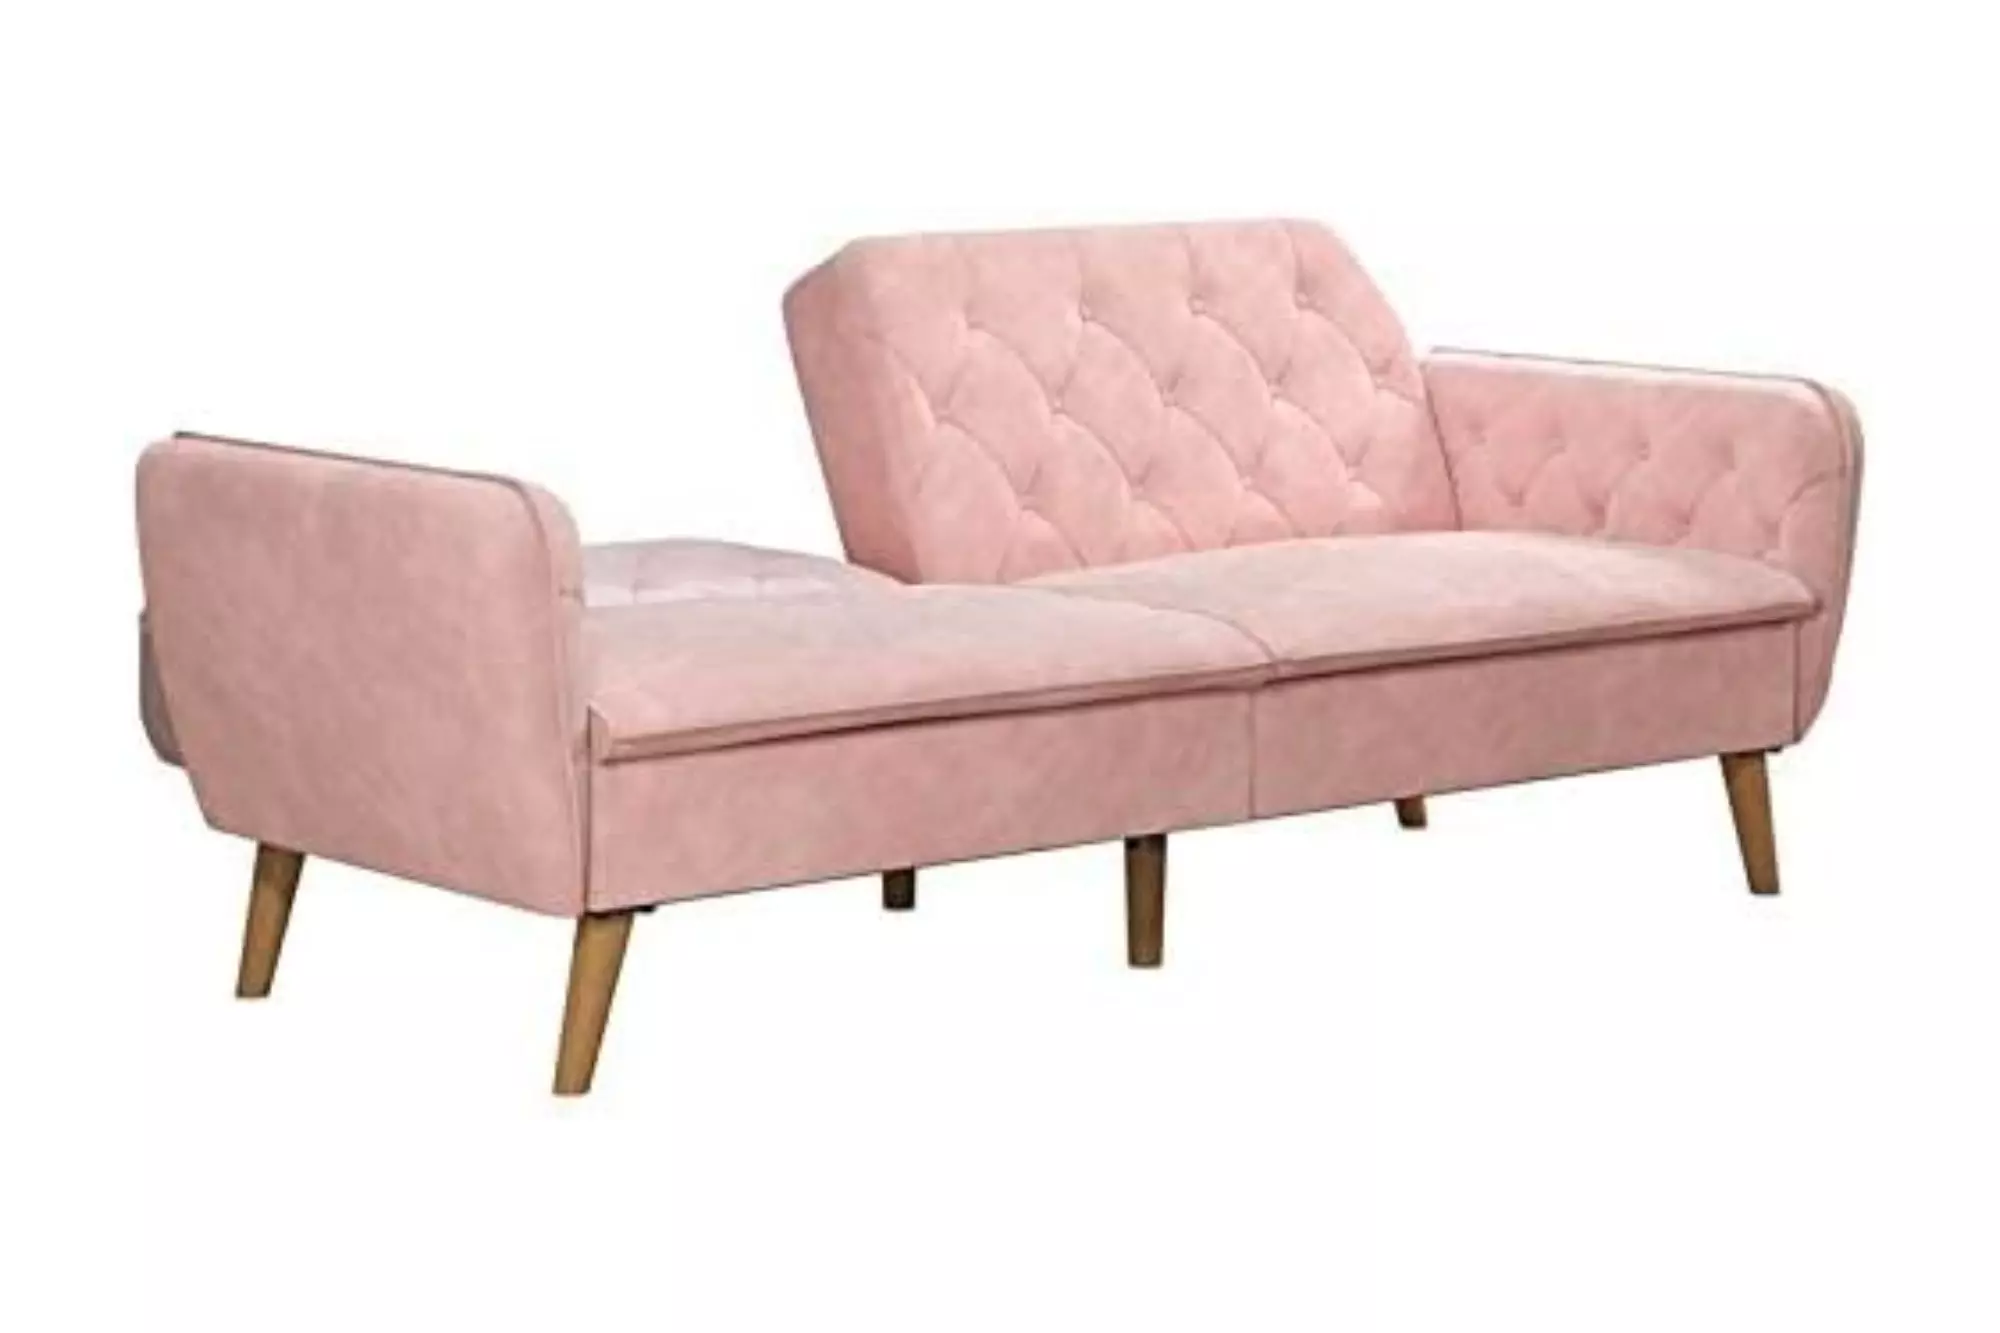 Light pink velvet sleeper sofa, half way open.